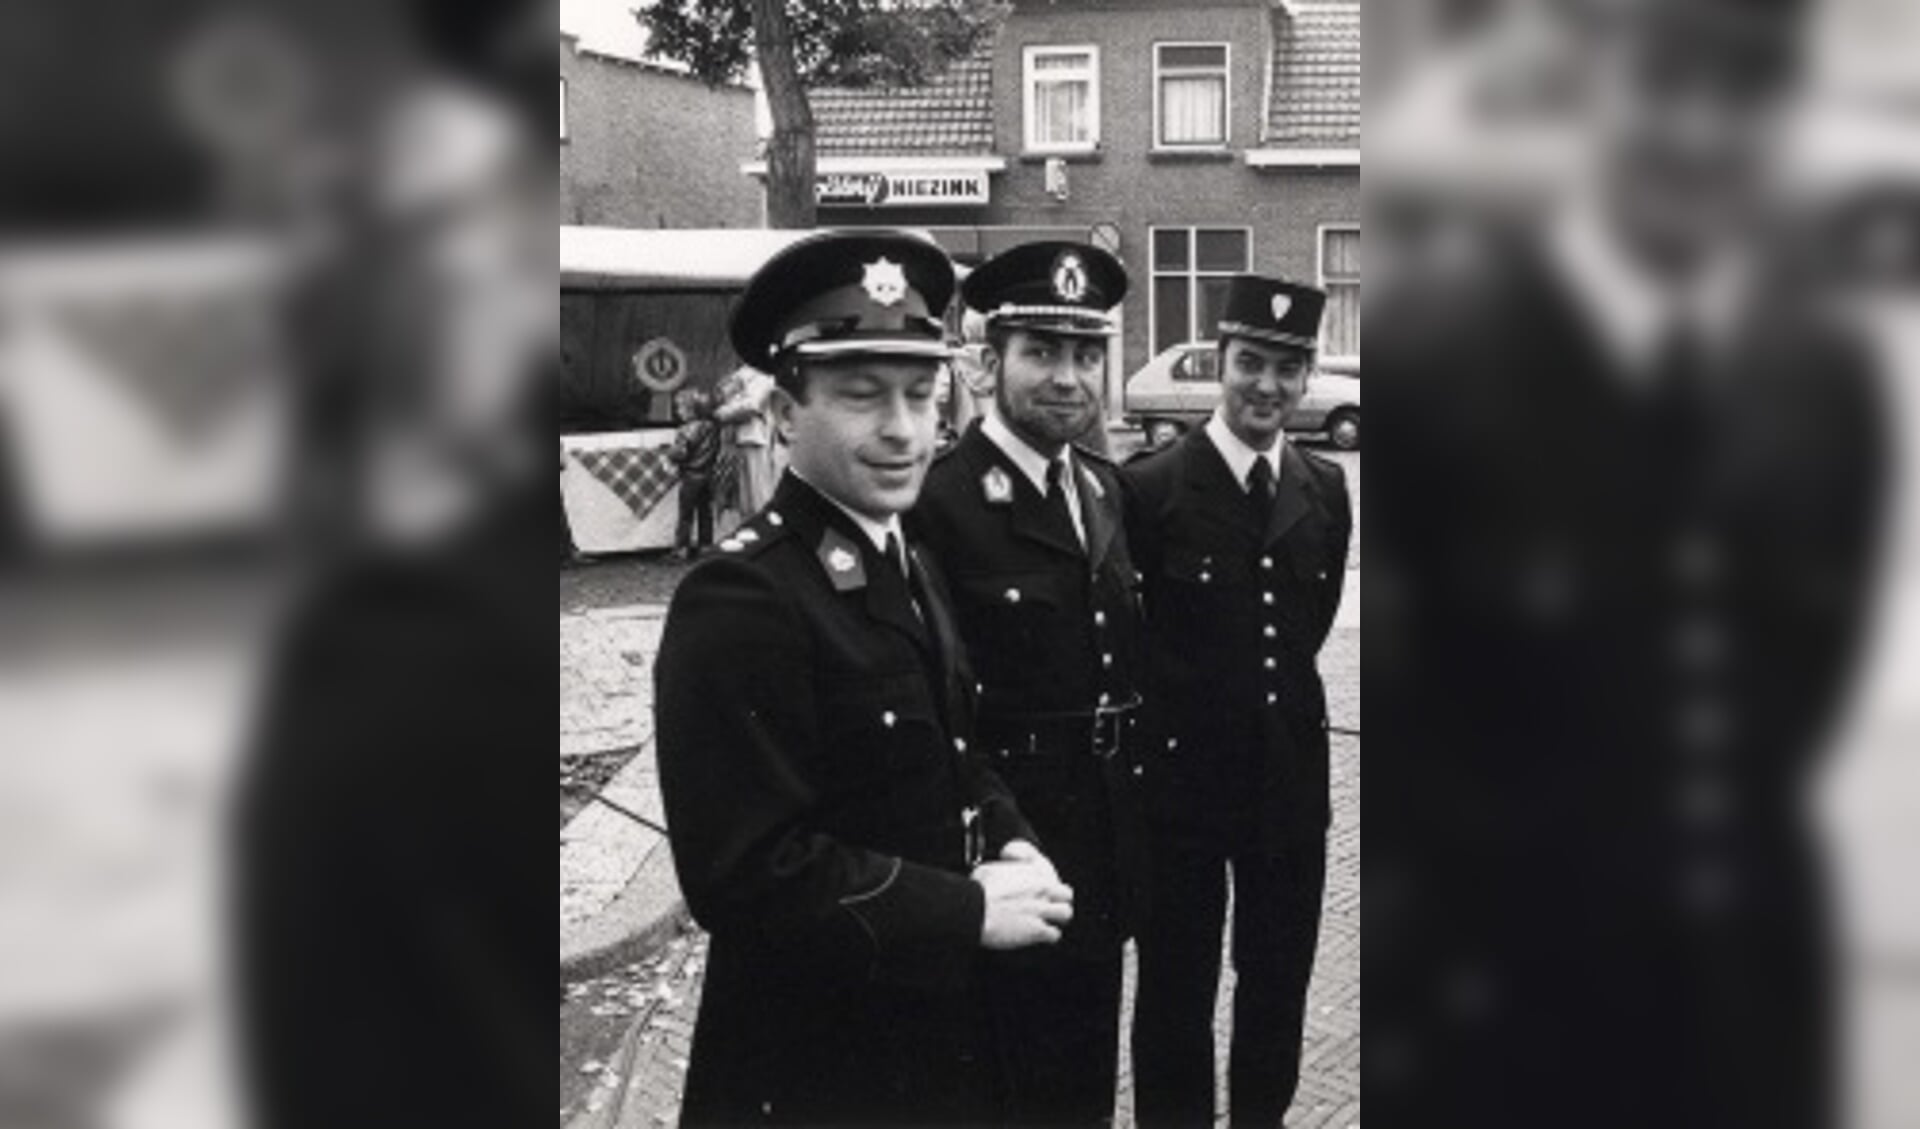 Drie politie-nationaliteiten samen in Wierden: Nederland, België en Frankrijk.